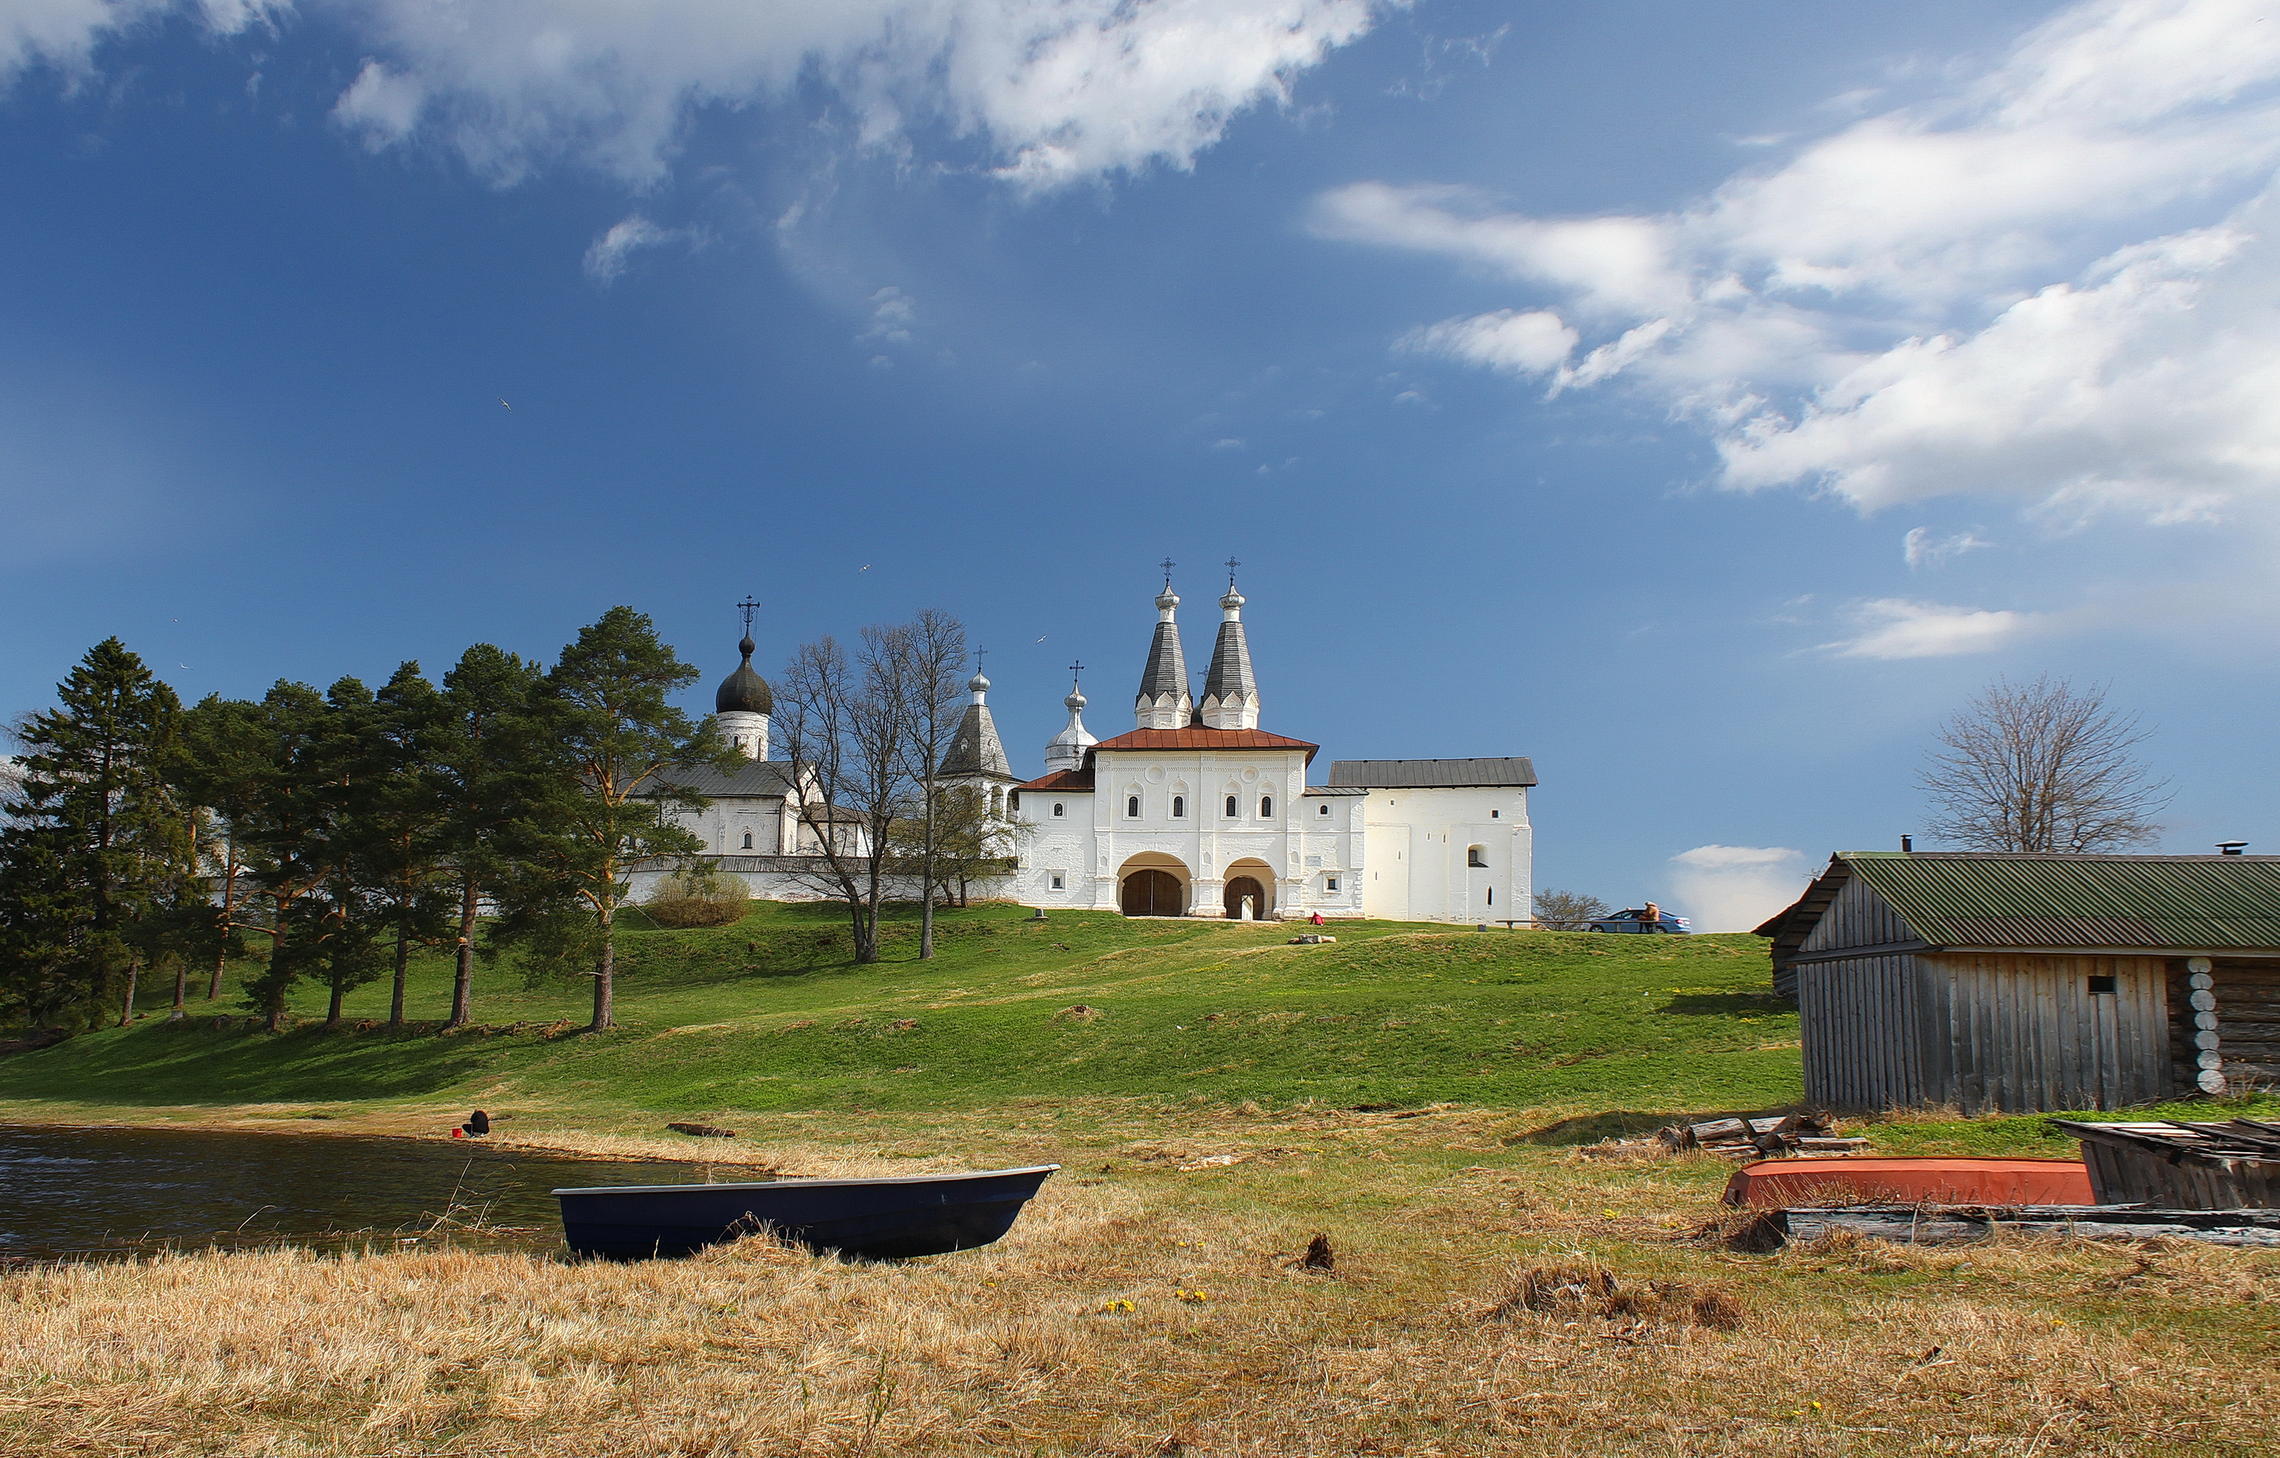 Ферапонтов монастырь Вологодская область